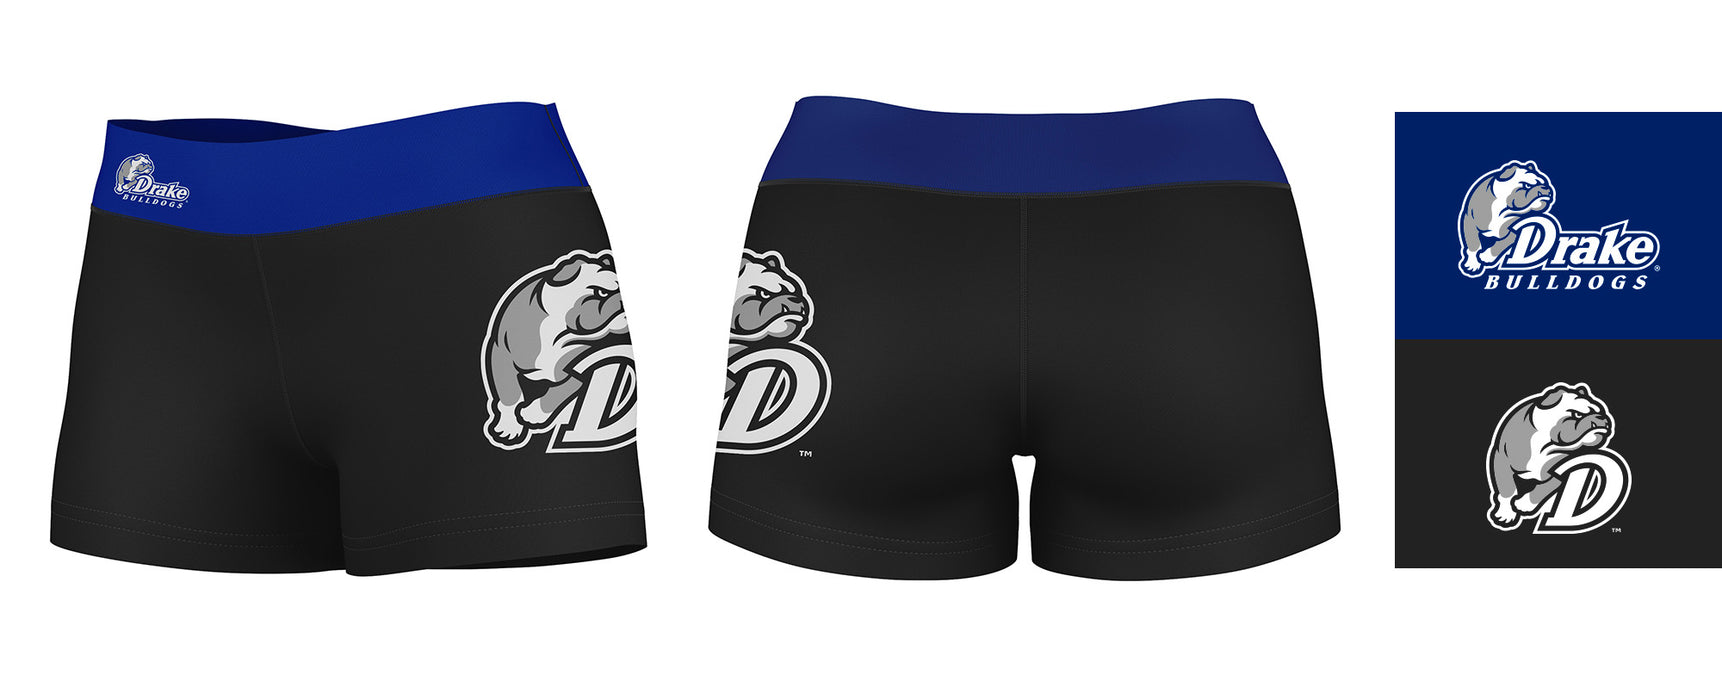 Drake Bulldogs Vive La Fete Game Day Logo on Thigh & Waistband Black & Blue Women Yoga Booty Workout Shorts 3.75 Inseam" - Vive La Fête - Online Apparel Store